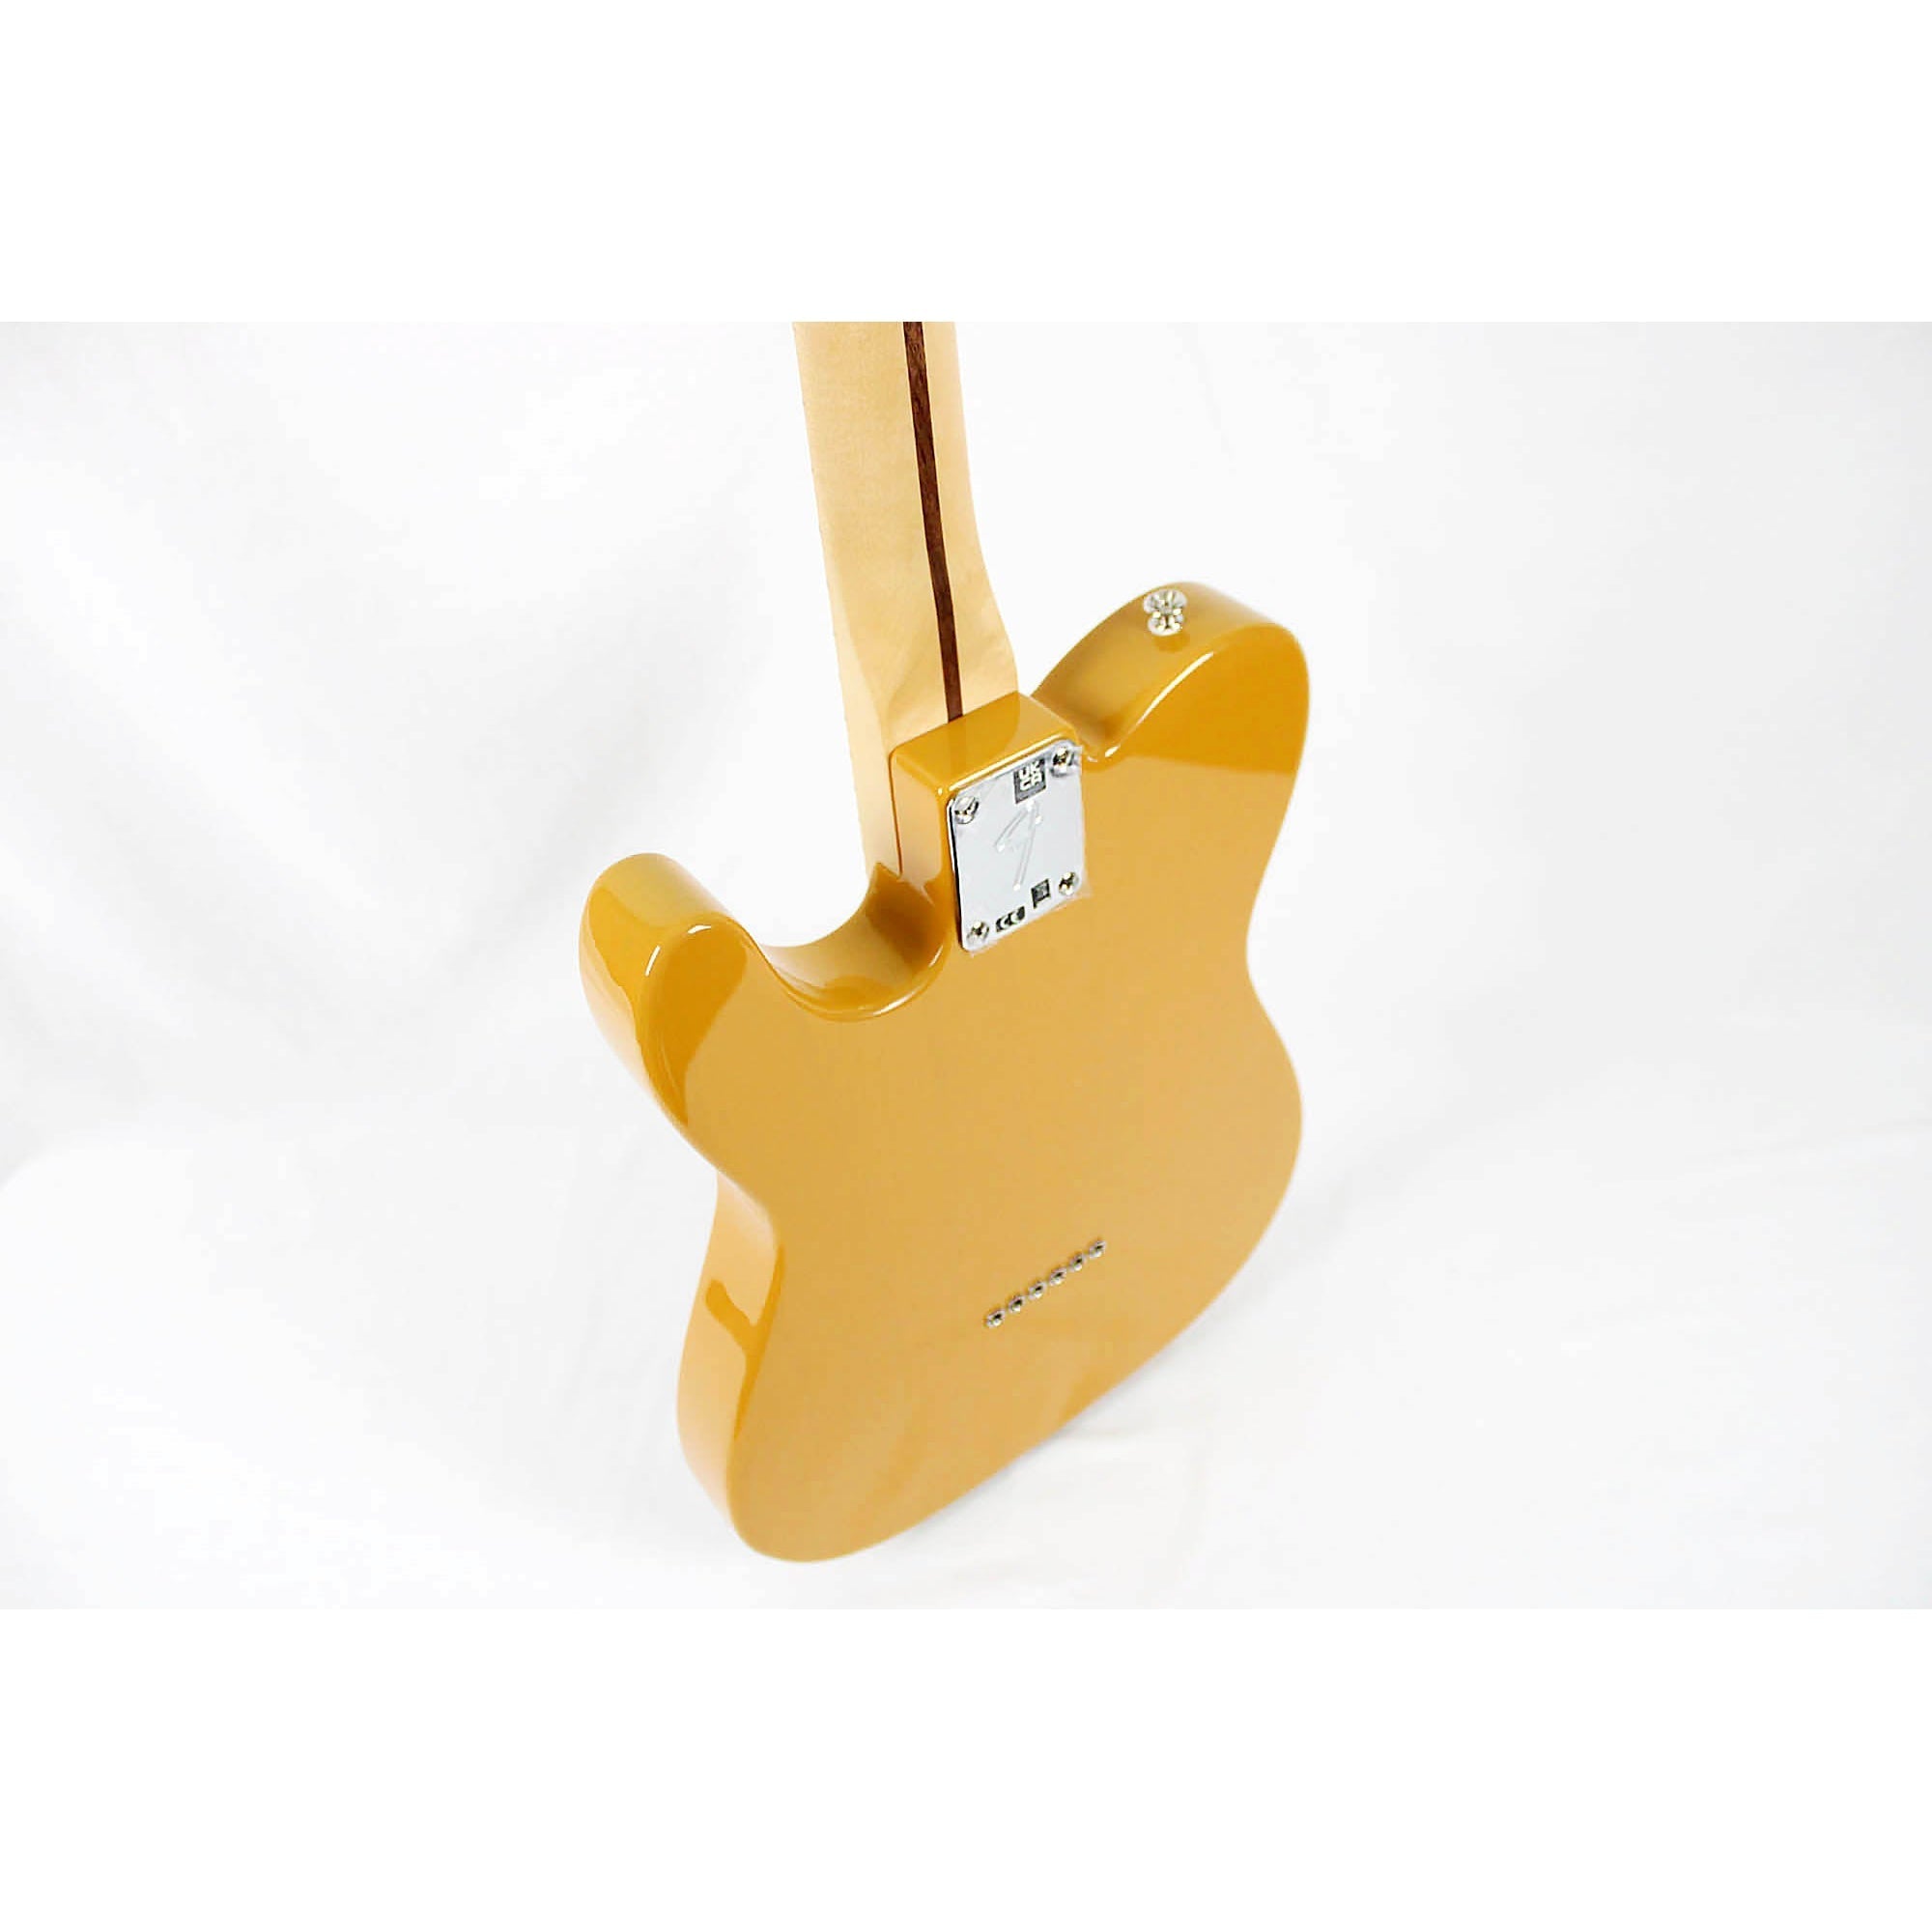 Fender Player Series Telecaster - Butterscotch Blonde